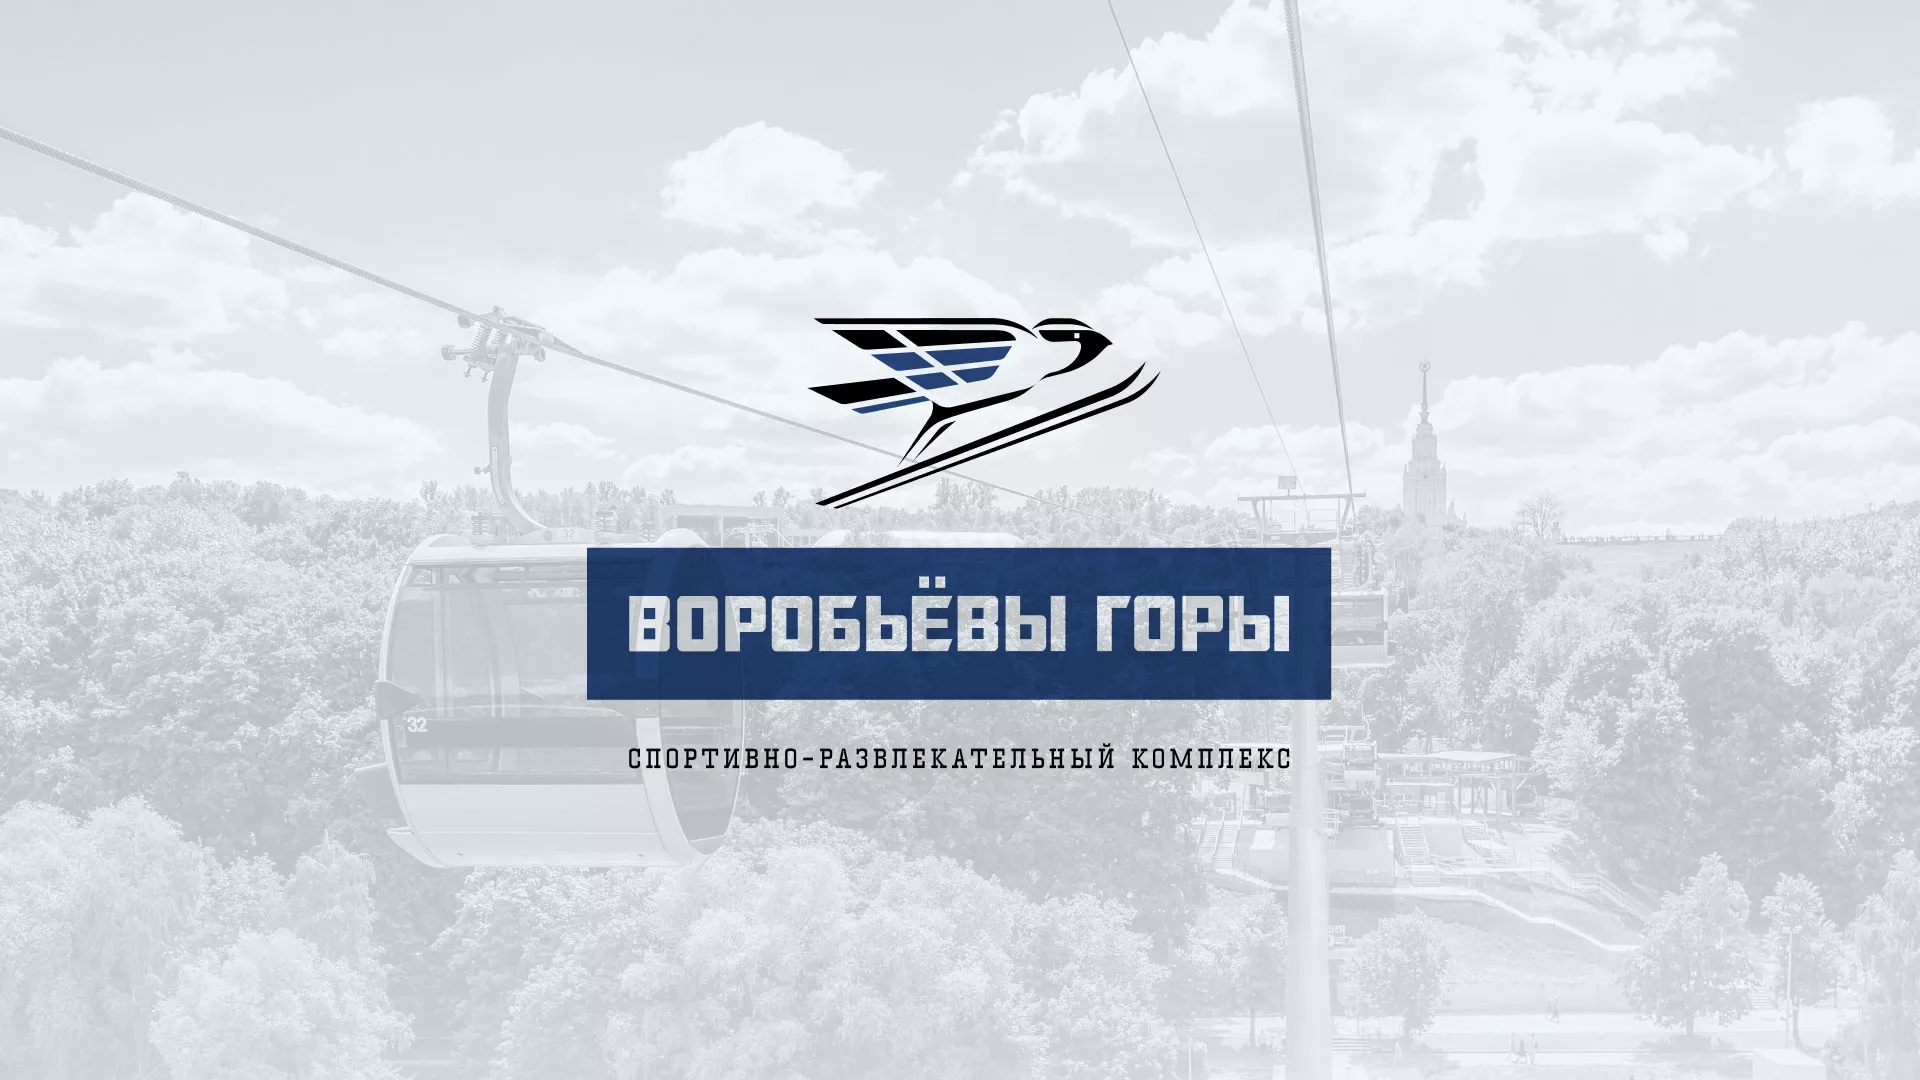 Разработка сайта в Покровске для спортивно-развлекательного комплекса «Воробьёвы горы»